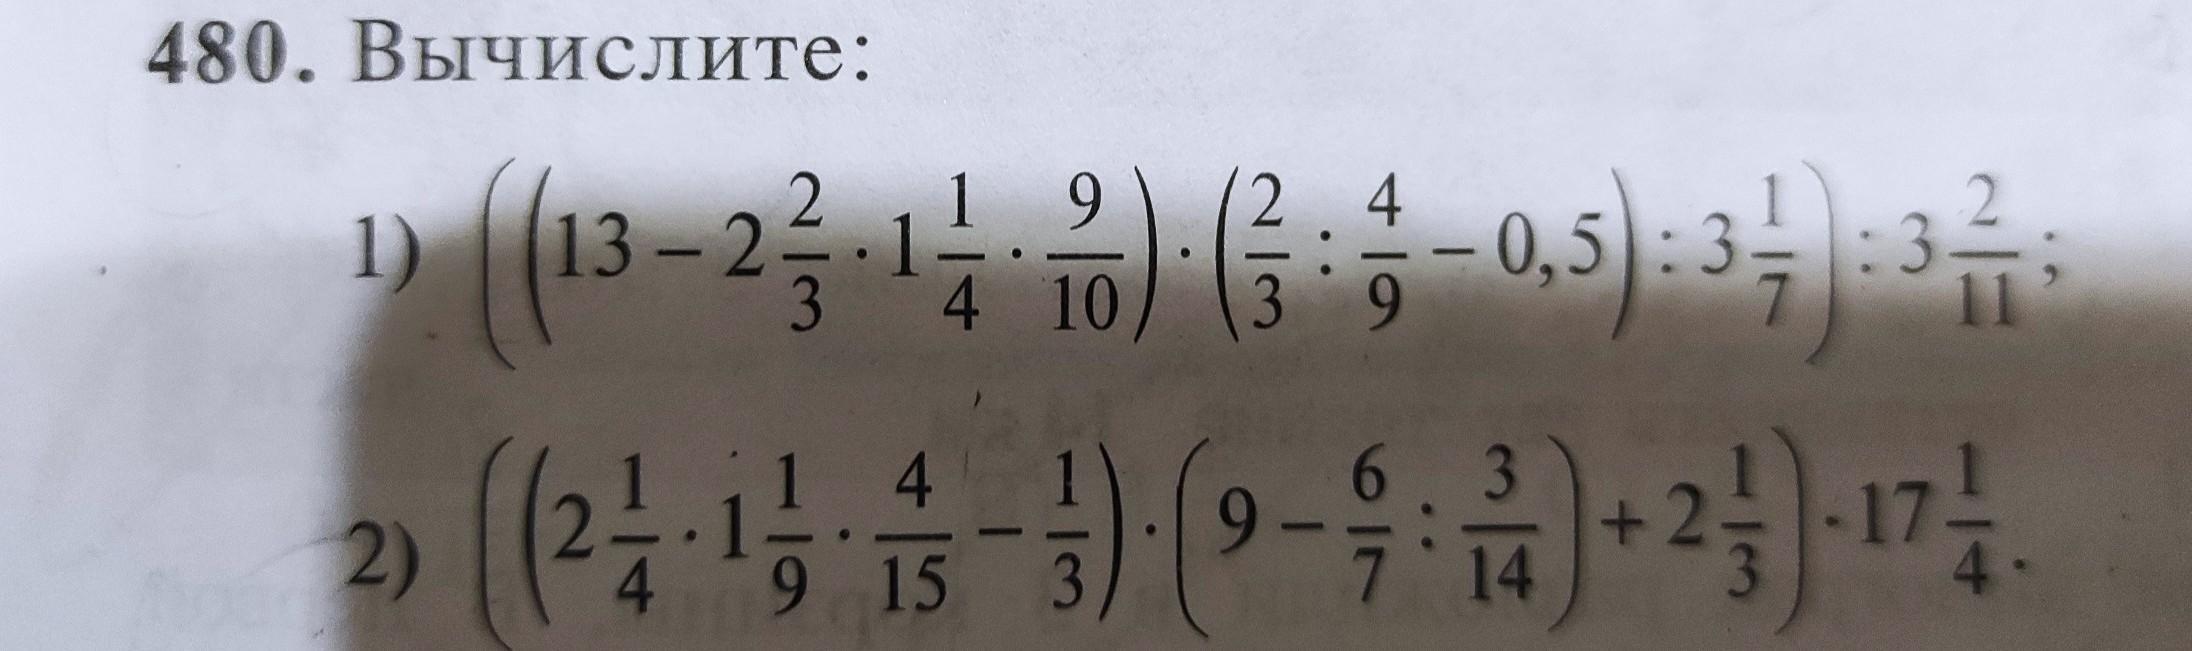 Вычислите 14 7 0 6. Вычисли:480:6.2. 11. Вычислите: 209 - 330 - (2415 - 3)(2415 + 3)..